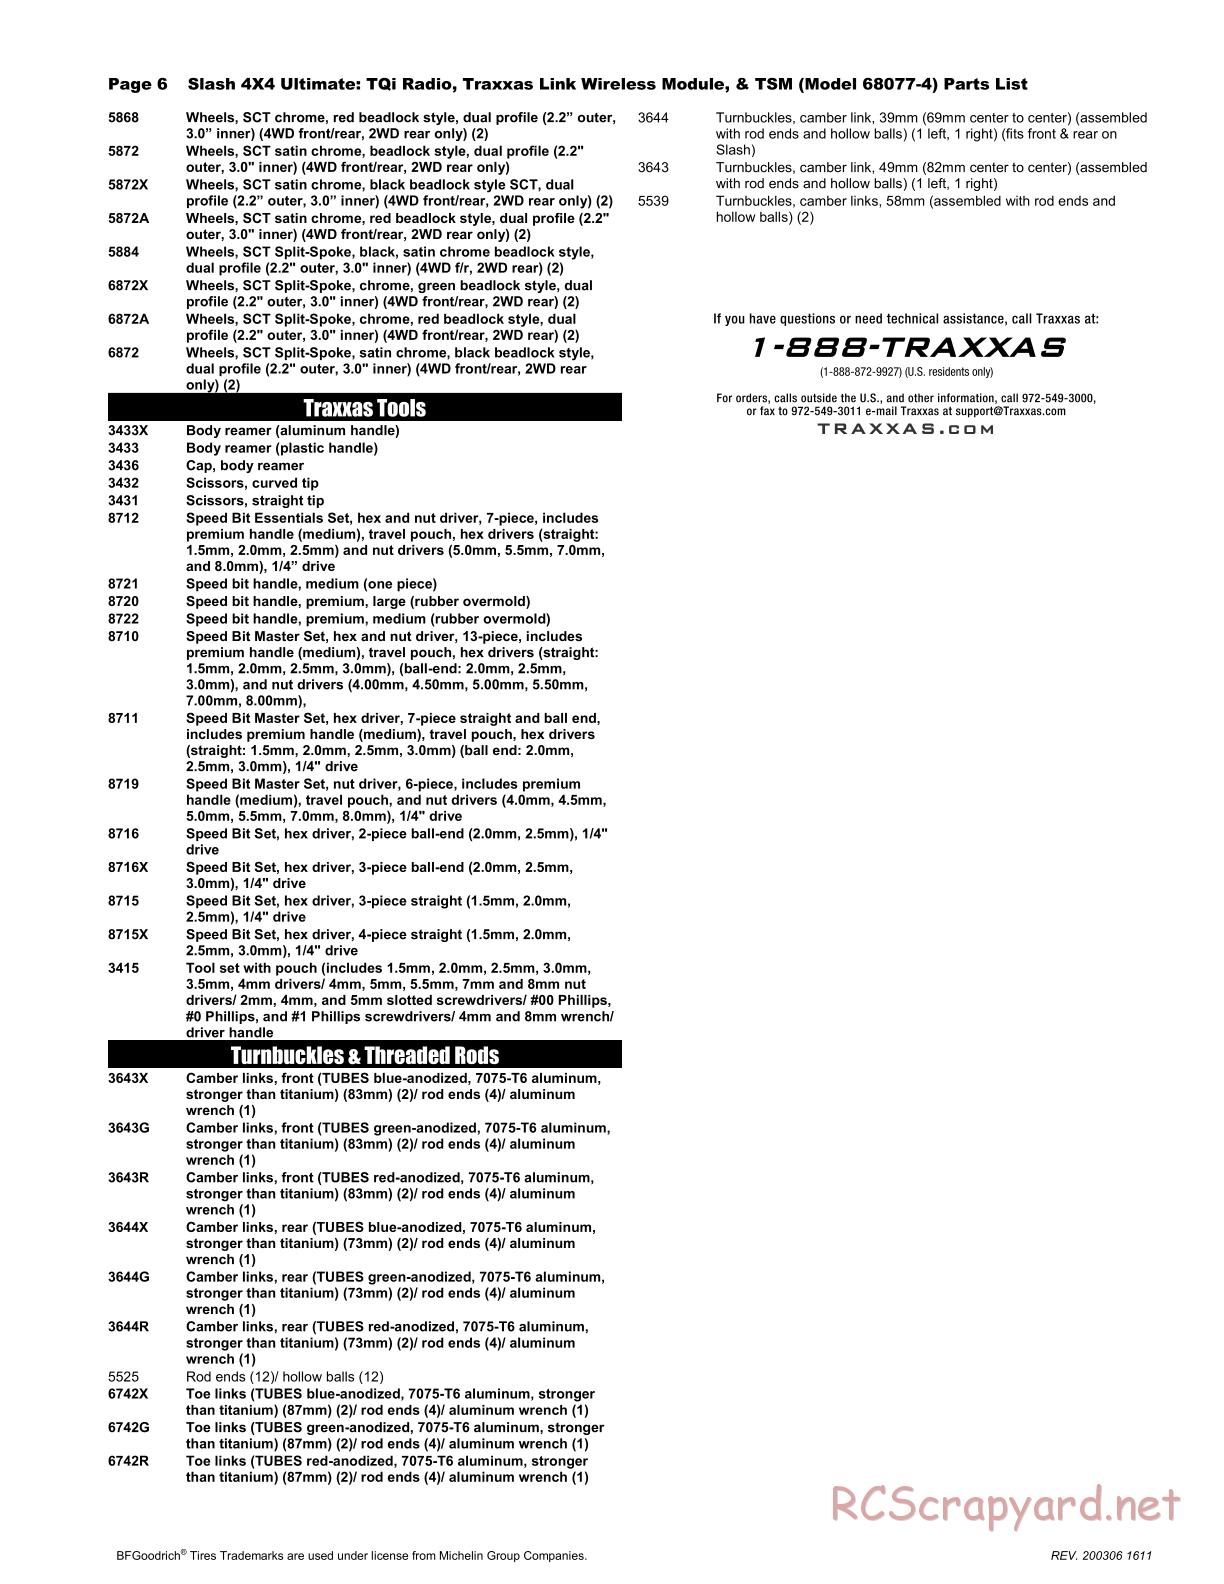 Traxxas - Slash 4x4 Ultimate TSM - Parts List - Page 6